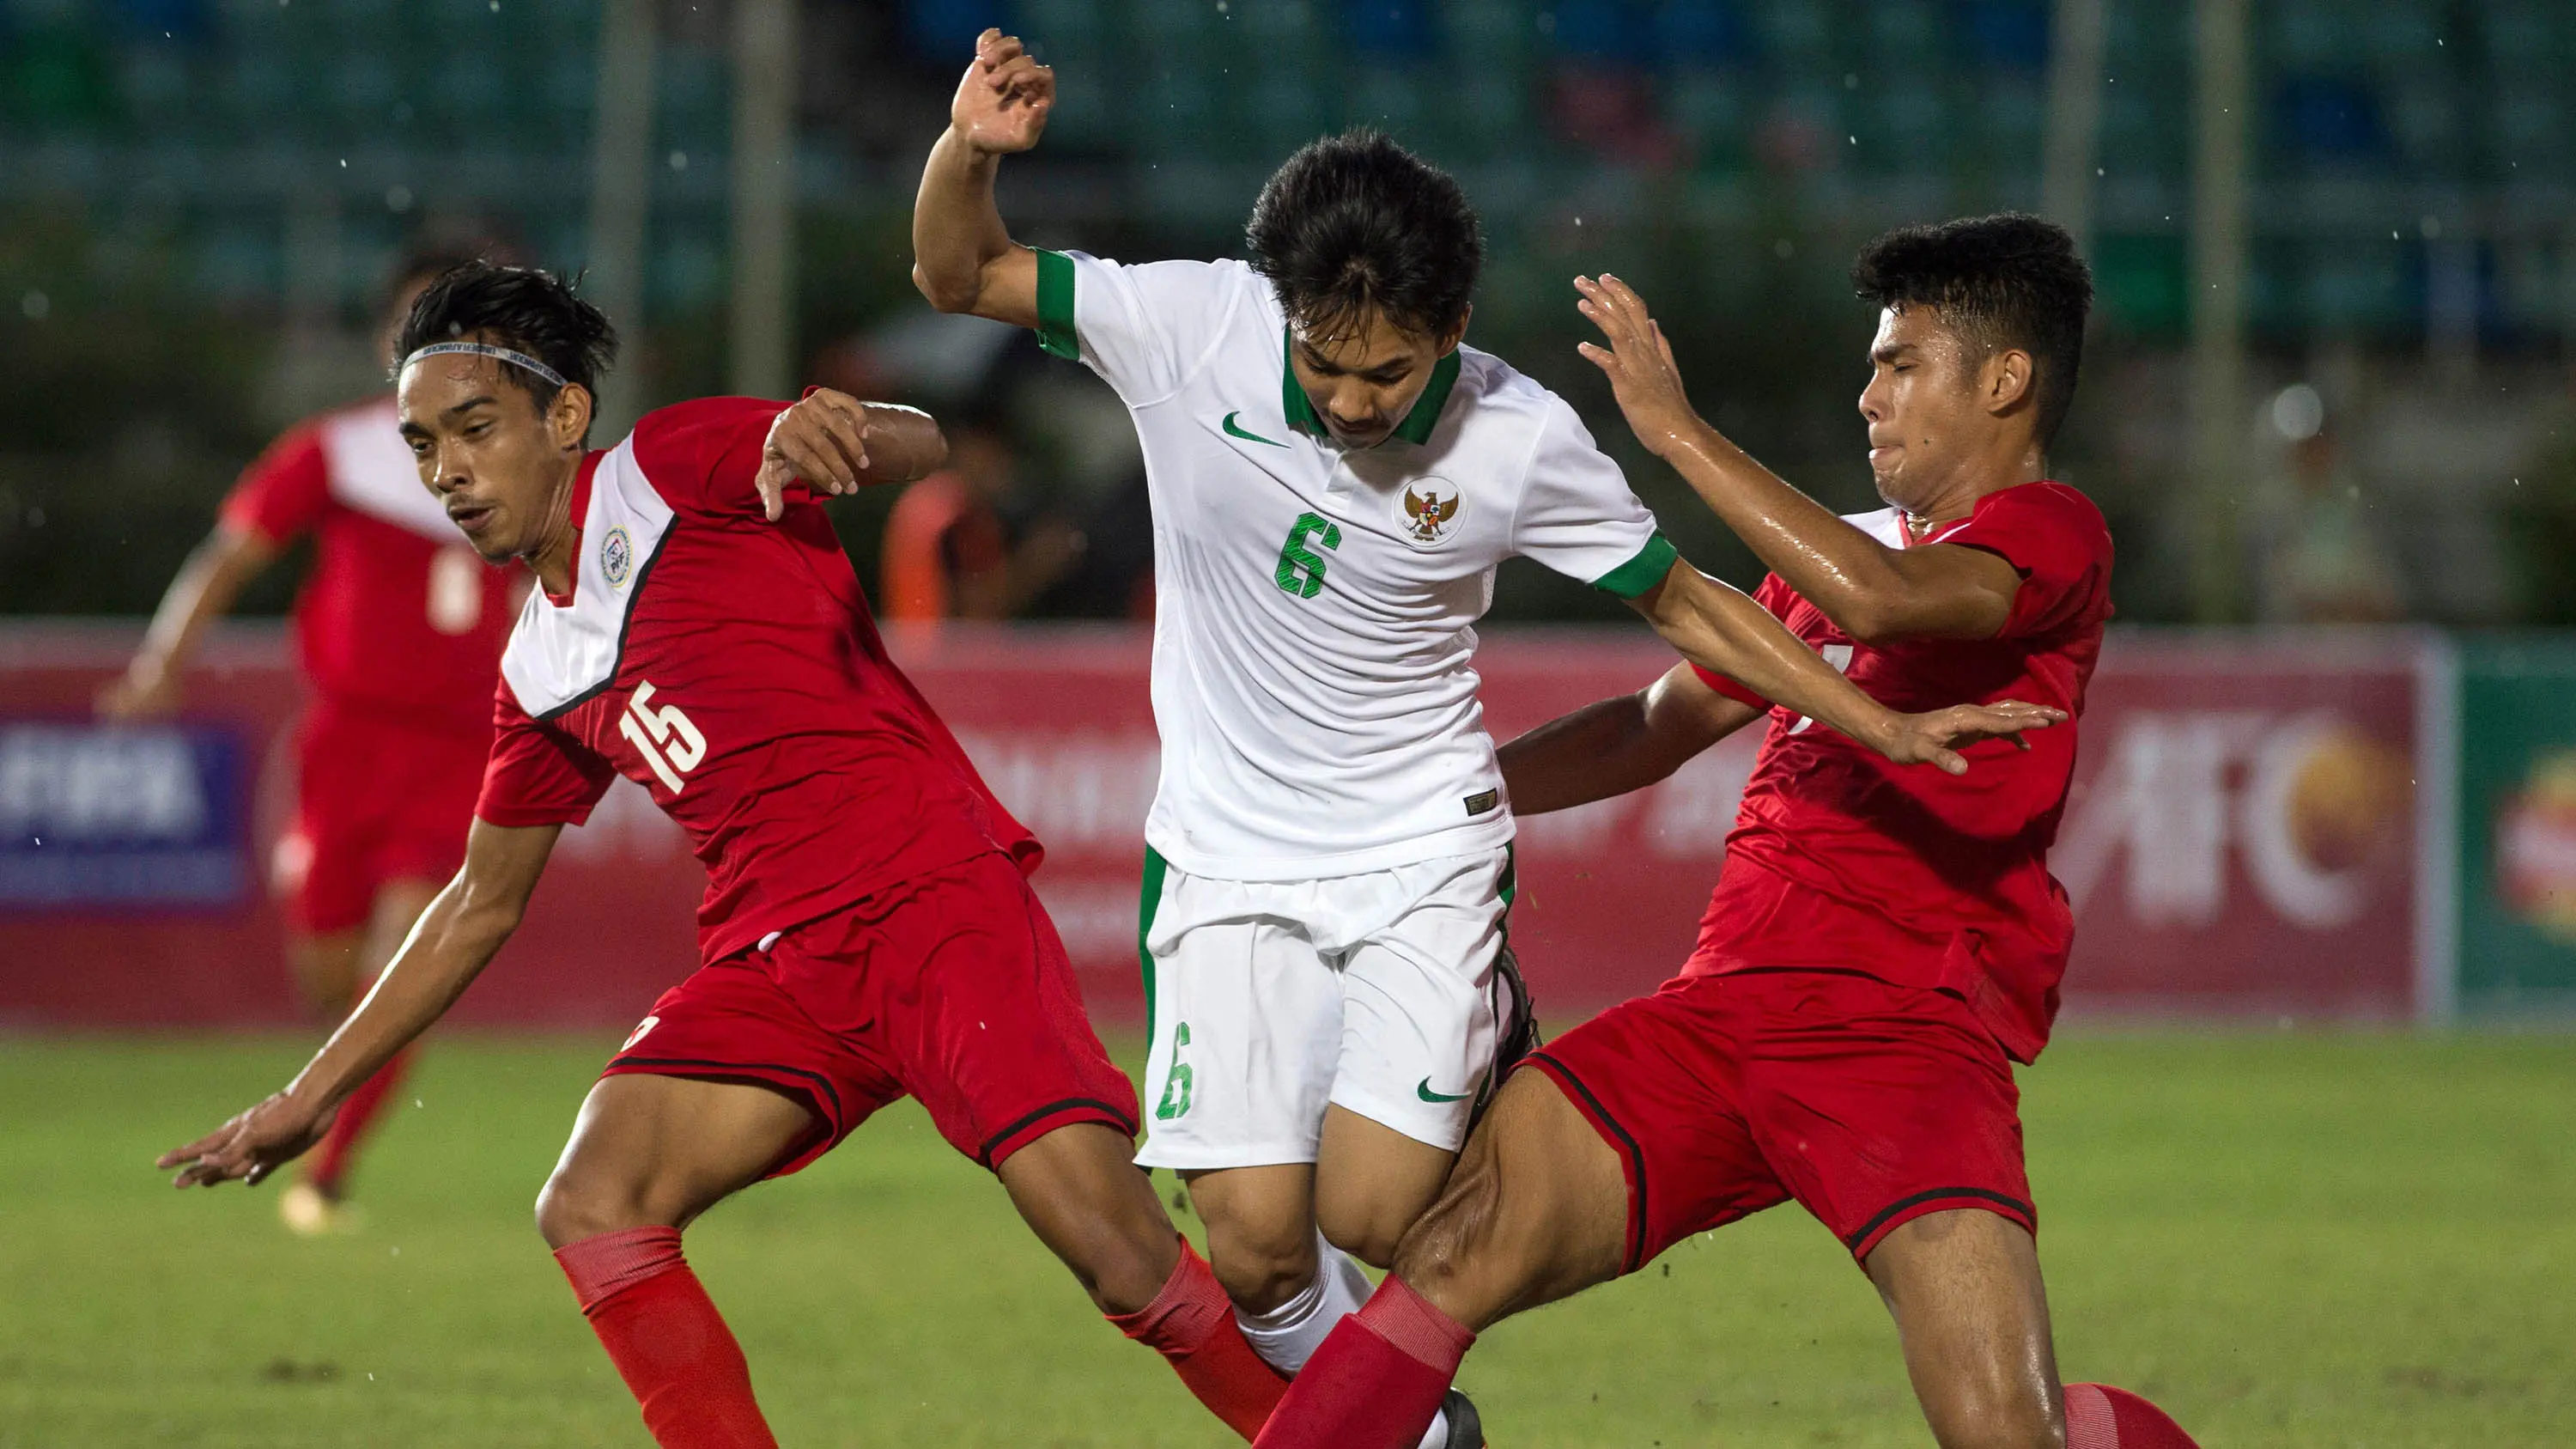 Gelandang Timnas Indonesia U-19, Muhammad Iqbal, berusaha melewati pemain Filipina U-19 pada laga Piala AFF U-18 di Stadion Thuwanna, Myanmar, Kamis (7/9/2017). Indonesia menang 9-0 atas Filipina. (AFP/Ye Aung Thu)